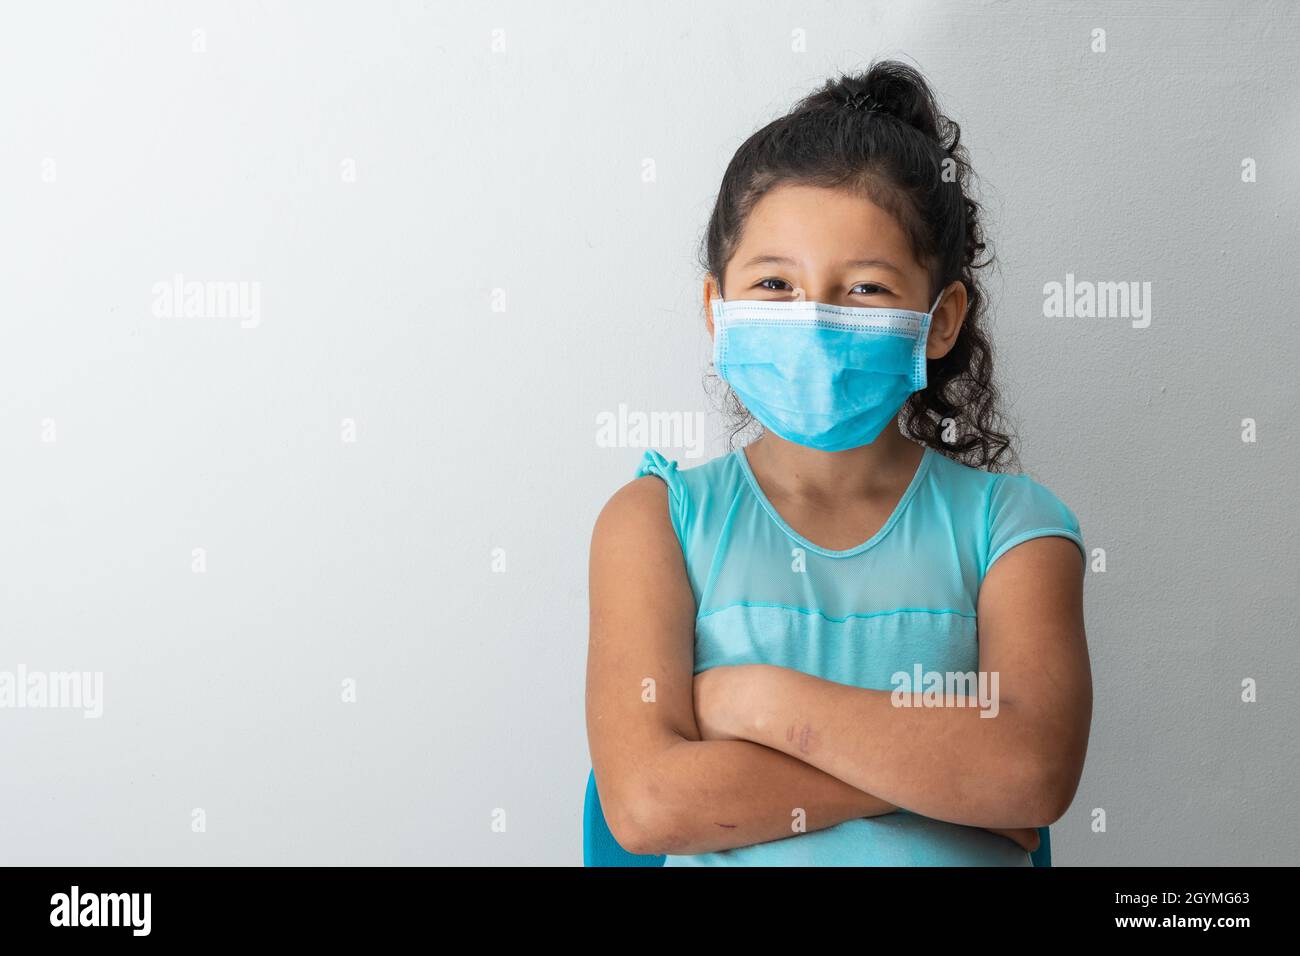 bambina (8 anni) guardando verso la macchina fotografica sorridente, aspetto felice, seduta con le braccia incrociate e maschera chirurgica blu. Medico, farmaceutico e Foto Stock